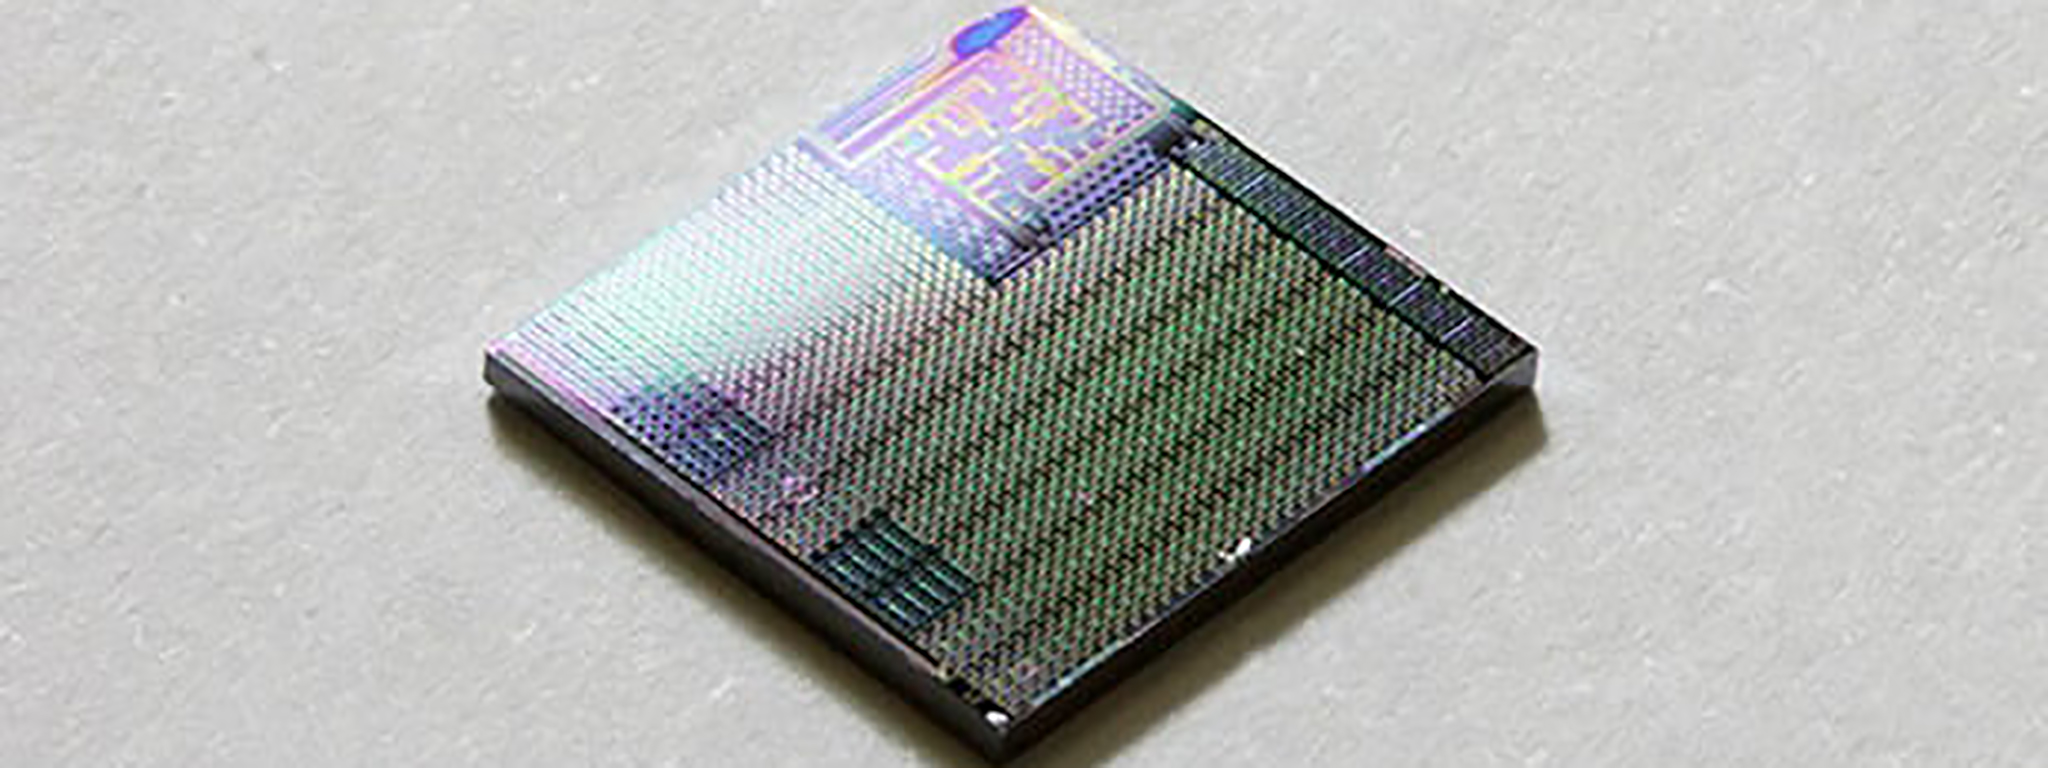 NASA và viện KAIST chế tạo thành công chip tự sửa khi hỏng dùng cho tàu vũ trụ nano